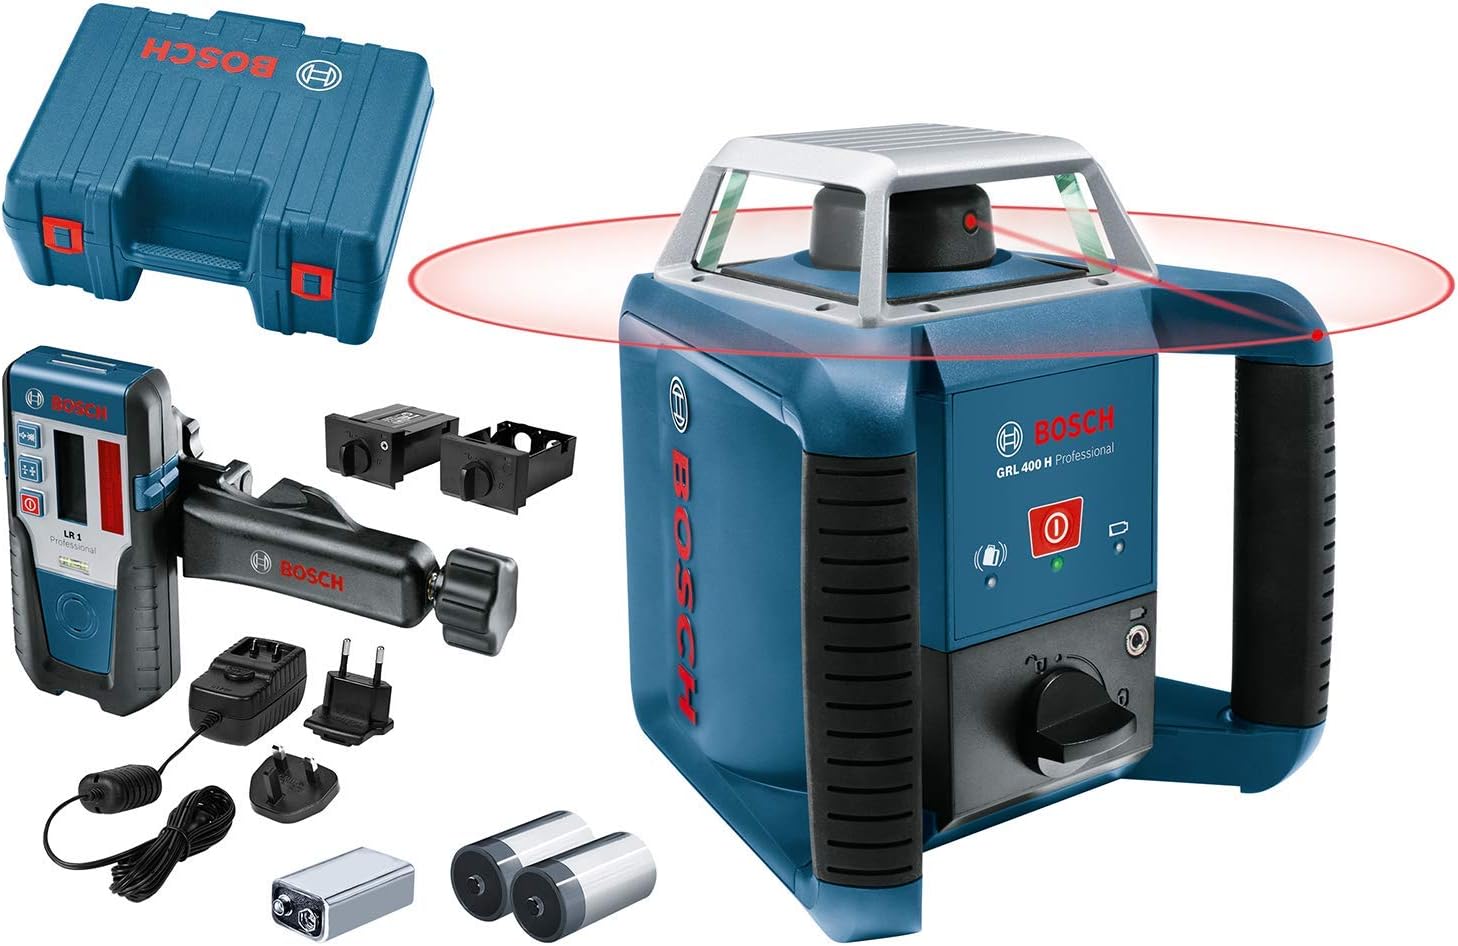 Bosch Professional GRL 400 HL Rotation Laser with LR1 + Bracket